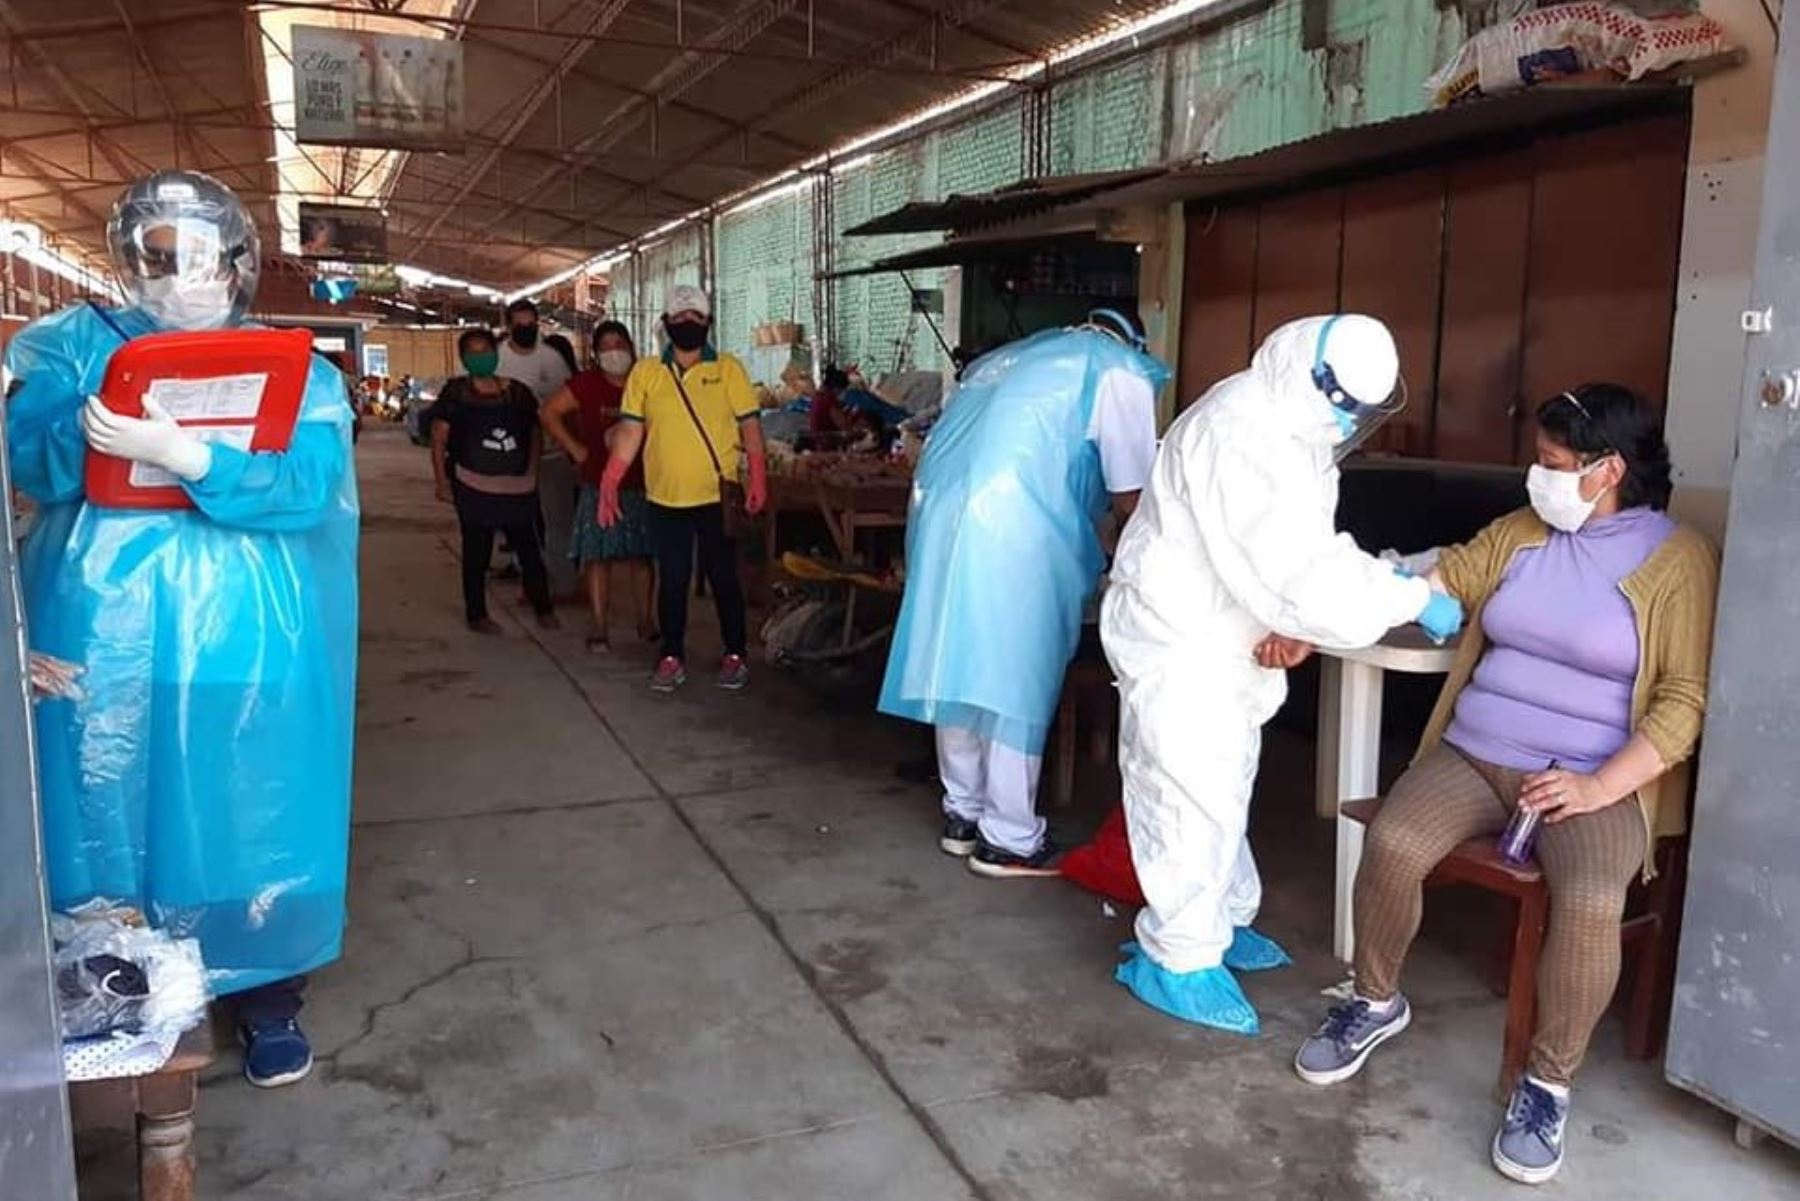 Toma de muestras a comerciantes del mercado de Íllimo (Lambayeque) para descartar coronavirus. Doce de ellos dieron positivo.